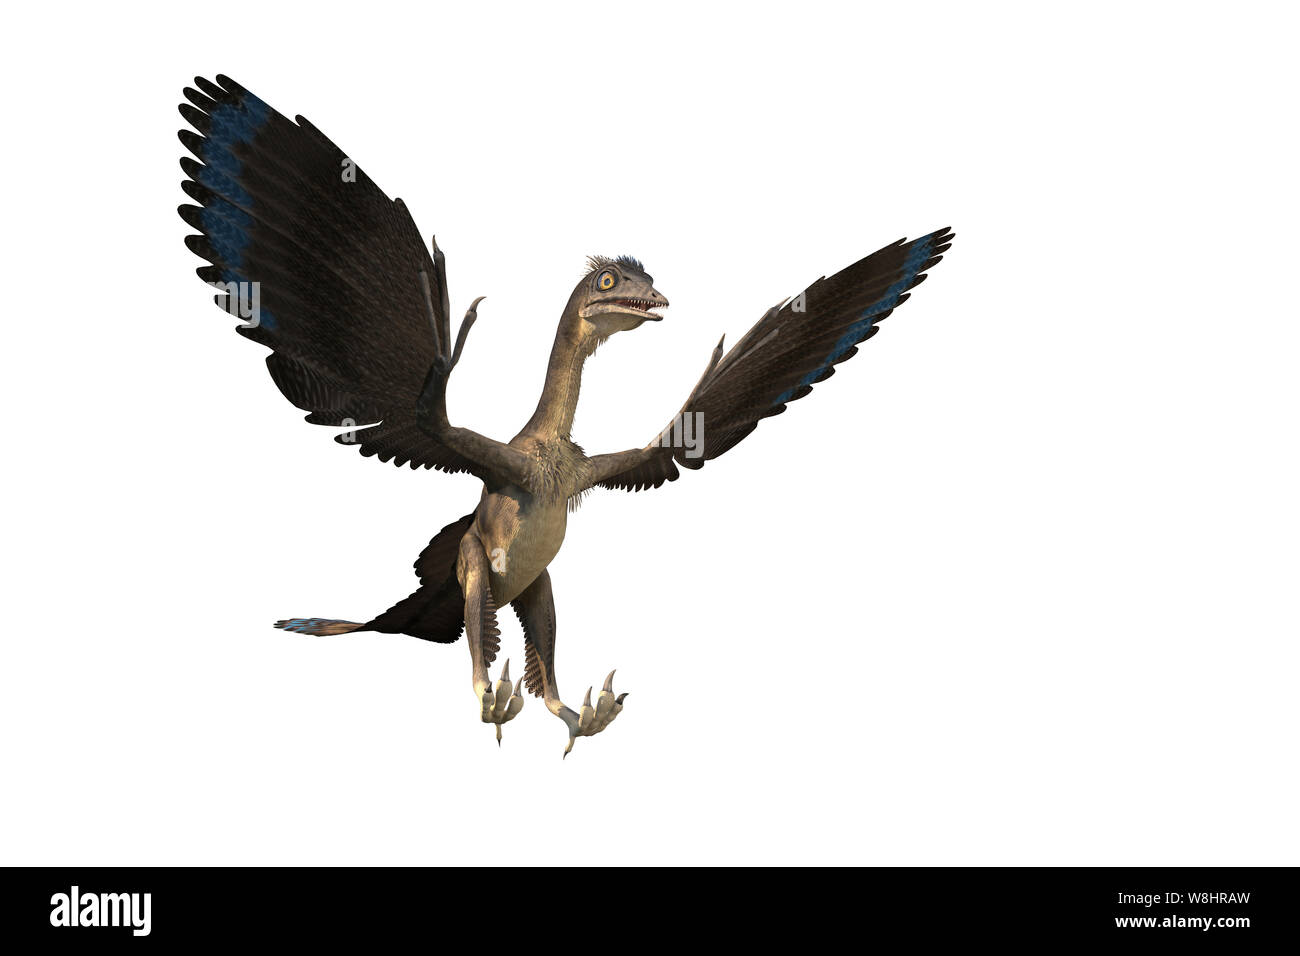 Dinosauro Archaeopteryx contro uno sfondo bianco, illustrazione. Questi uccelli come i dinosauri vivevano circa 150 milioni di anni fa durante il tardo giurassico. Foto Stock